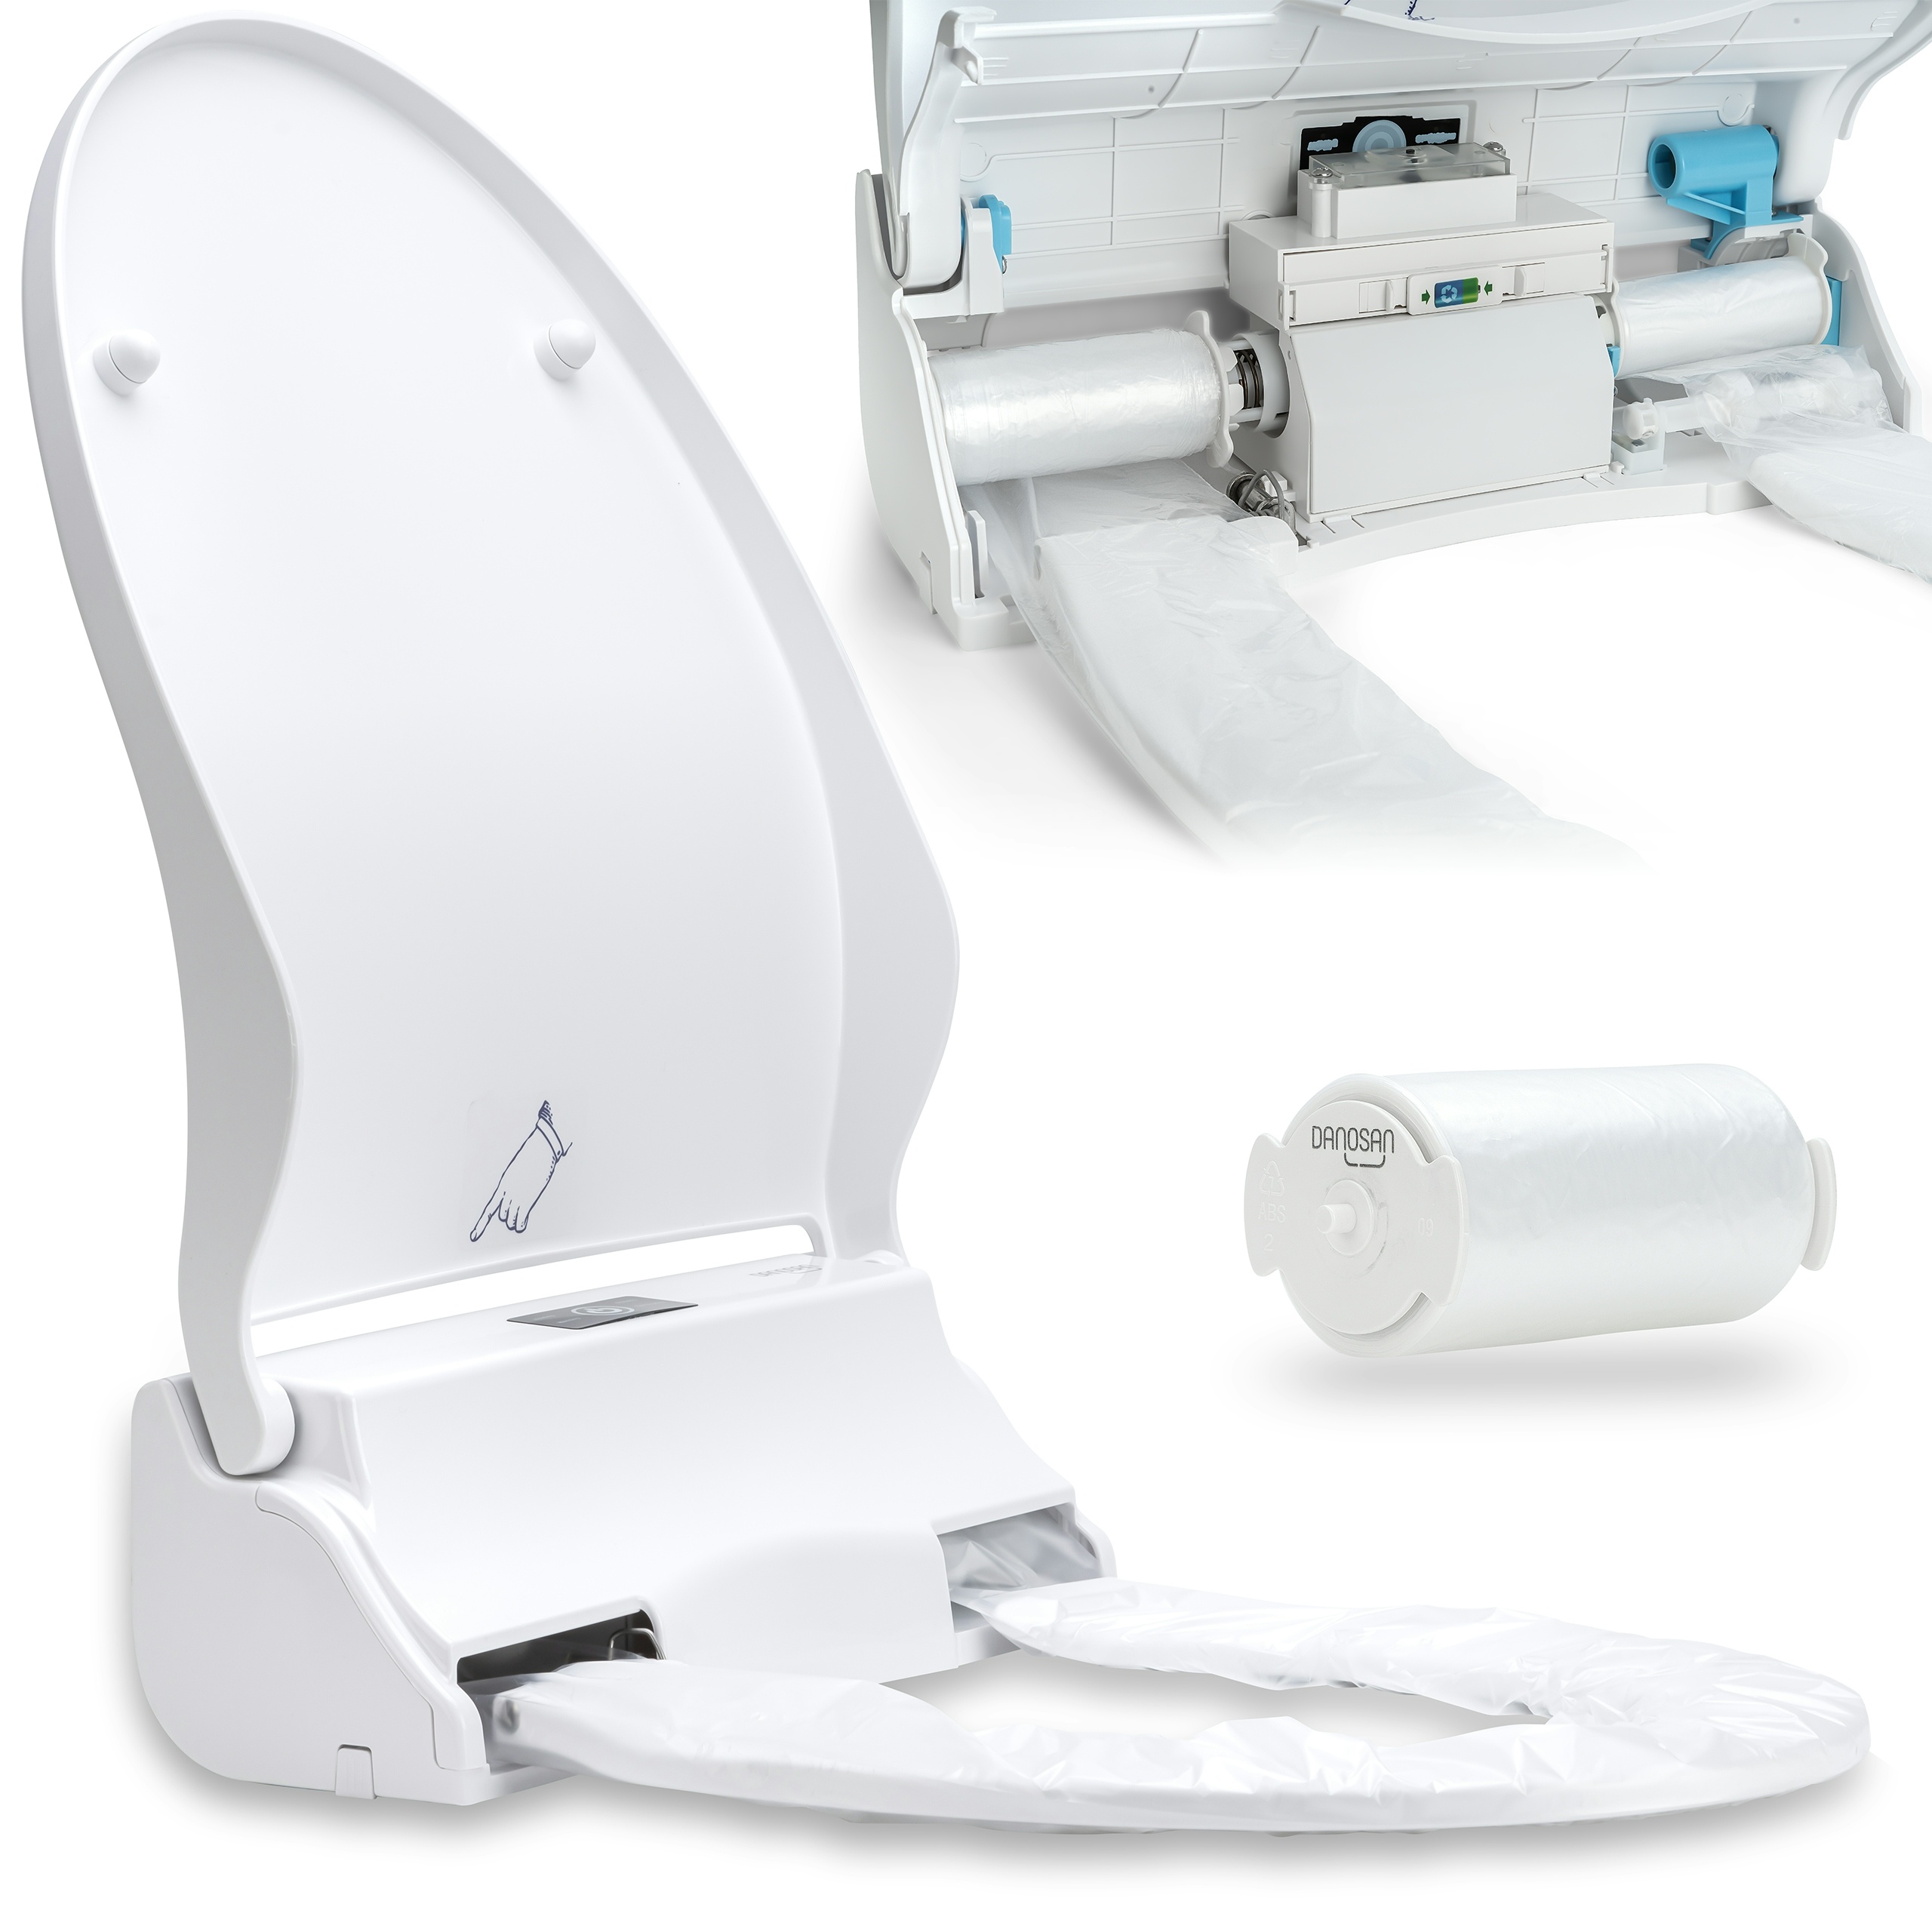 GVS DANOSAN Hygiene-WC-Sitz mit UV-Desinfektion, Schutz vor Viren und Keimen, Setangebott inkl. 5 Rollen Sanitärfolie